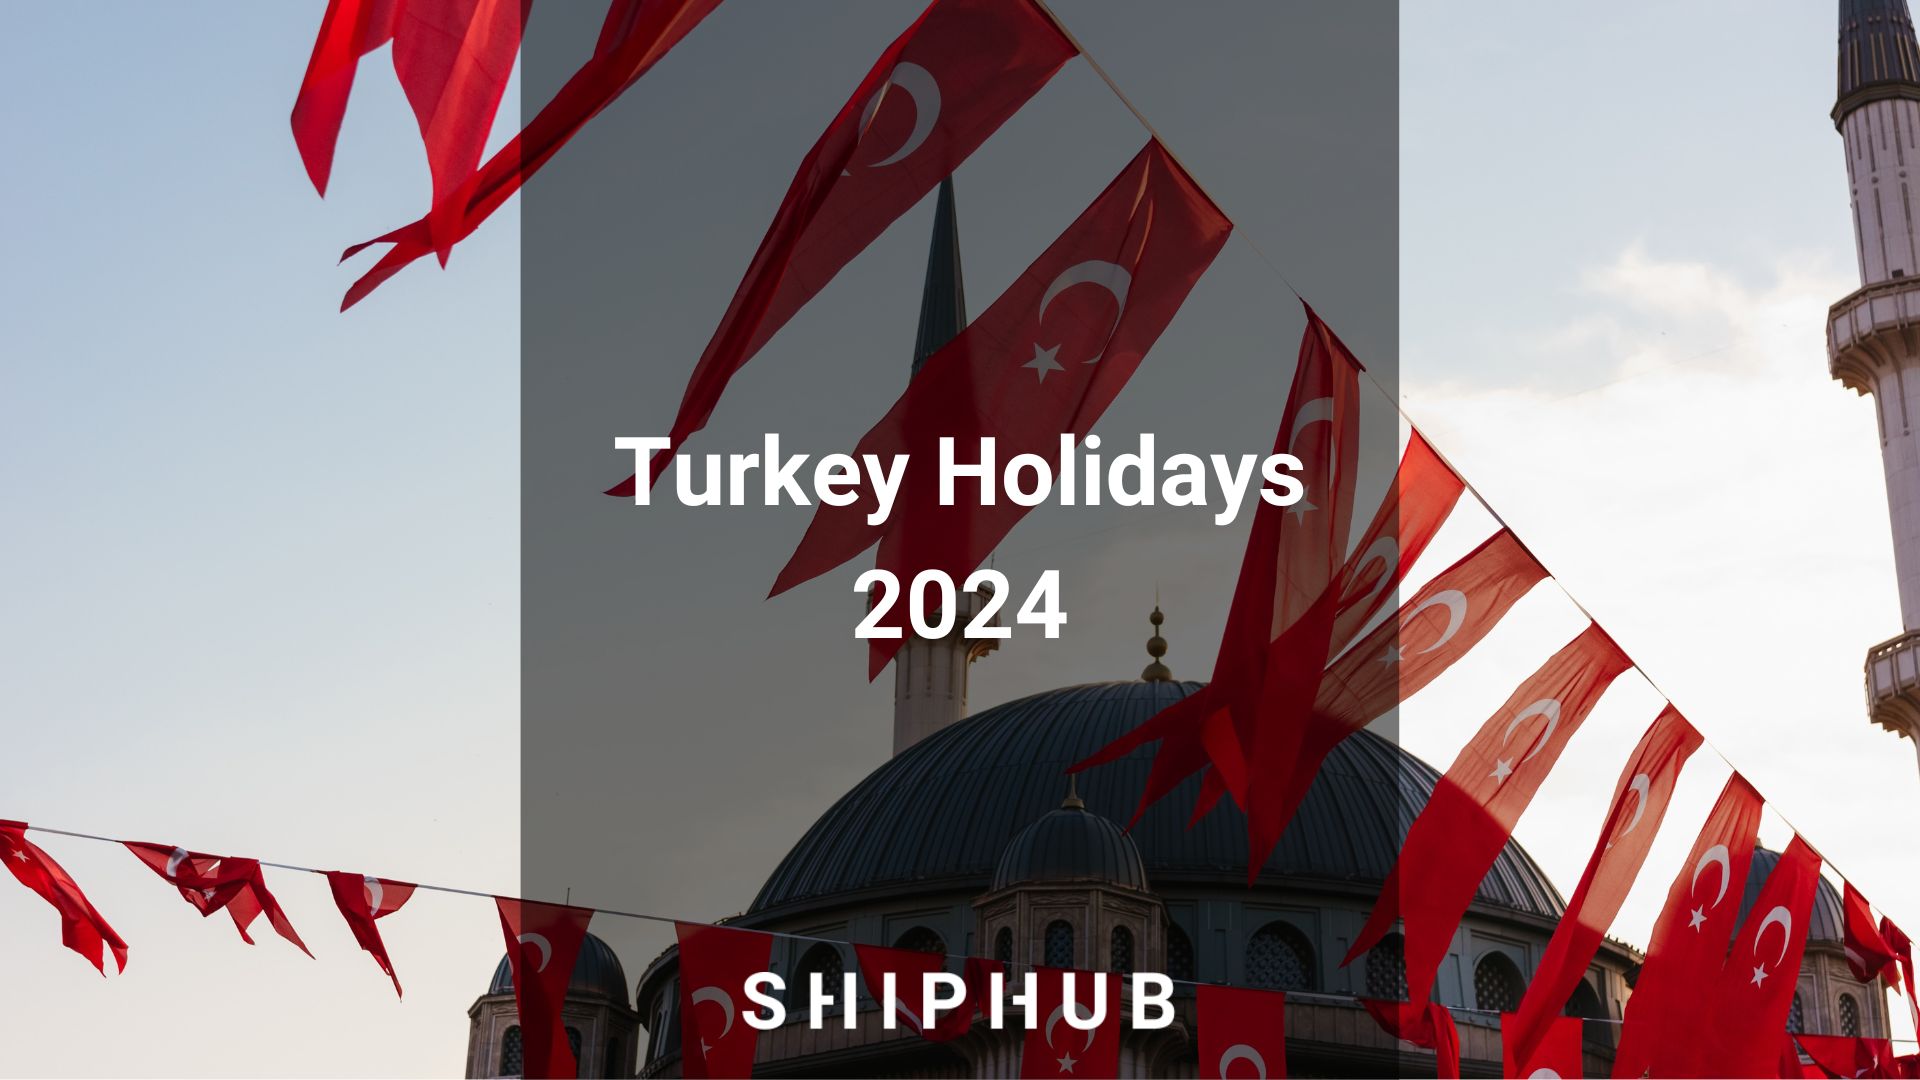 Turkey Holidays 2024